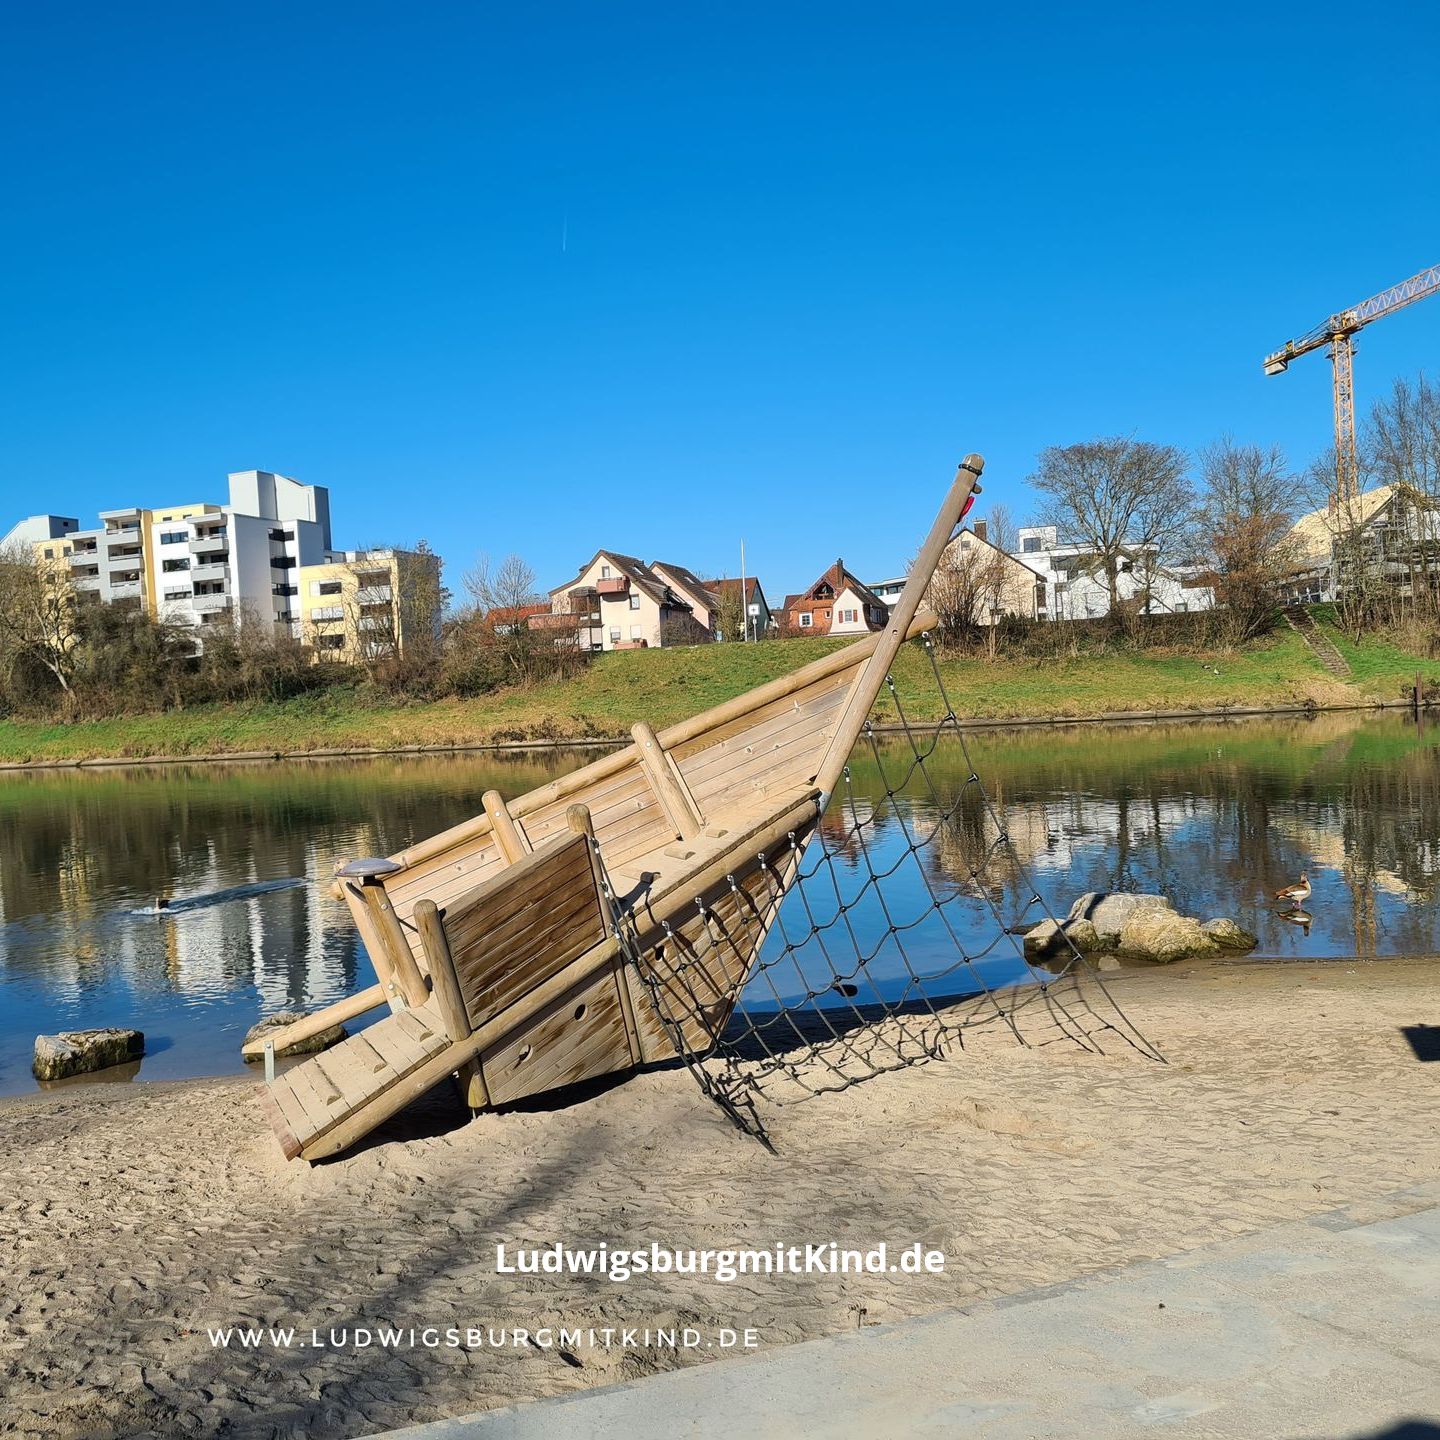 Auf dem Bild sieht man den Neckarstrand in Remseck am Neckar mit Piratenspielpkatz, ein beliebtes Familienausflugsziel